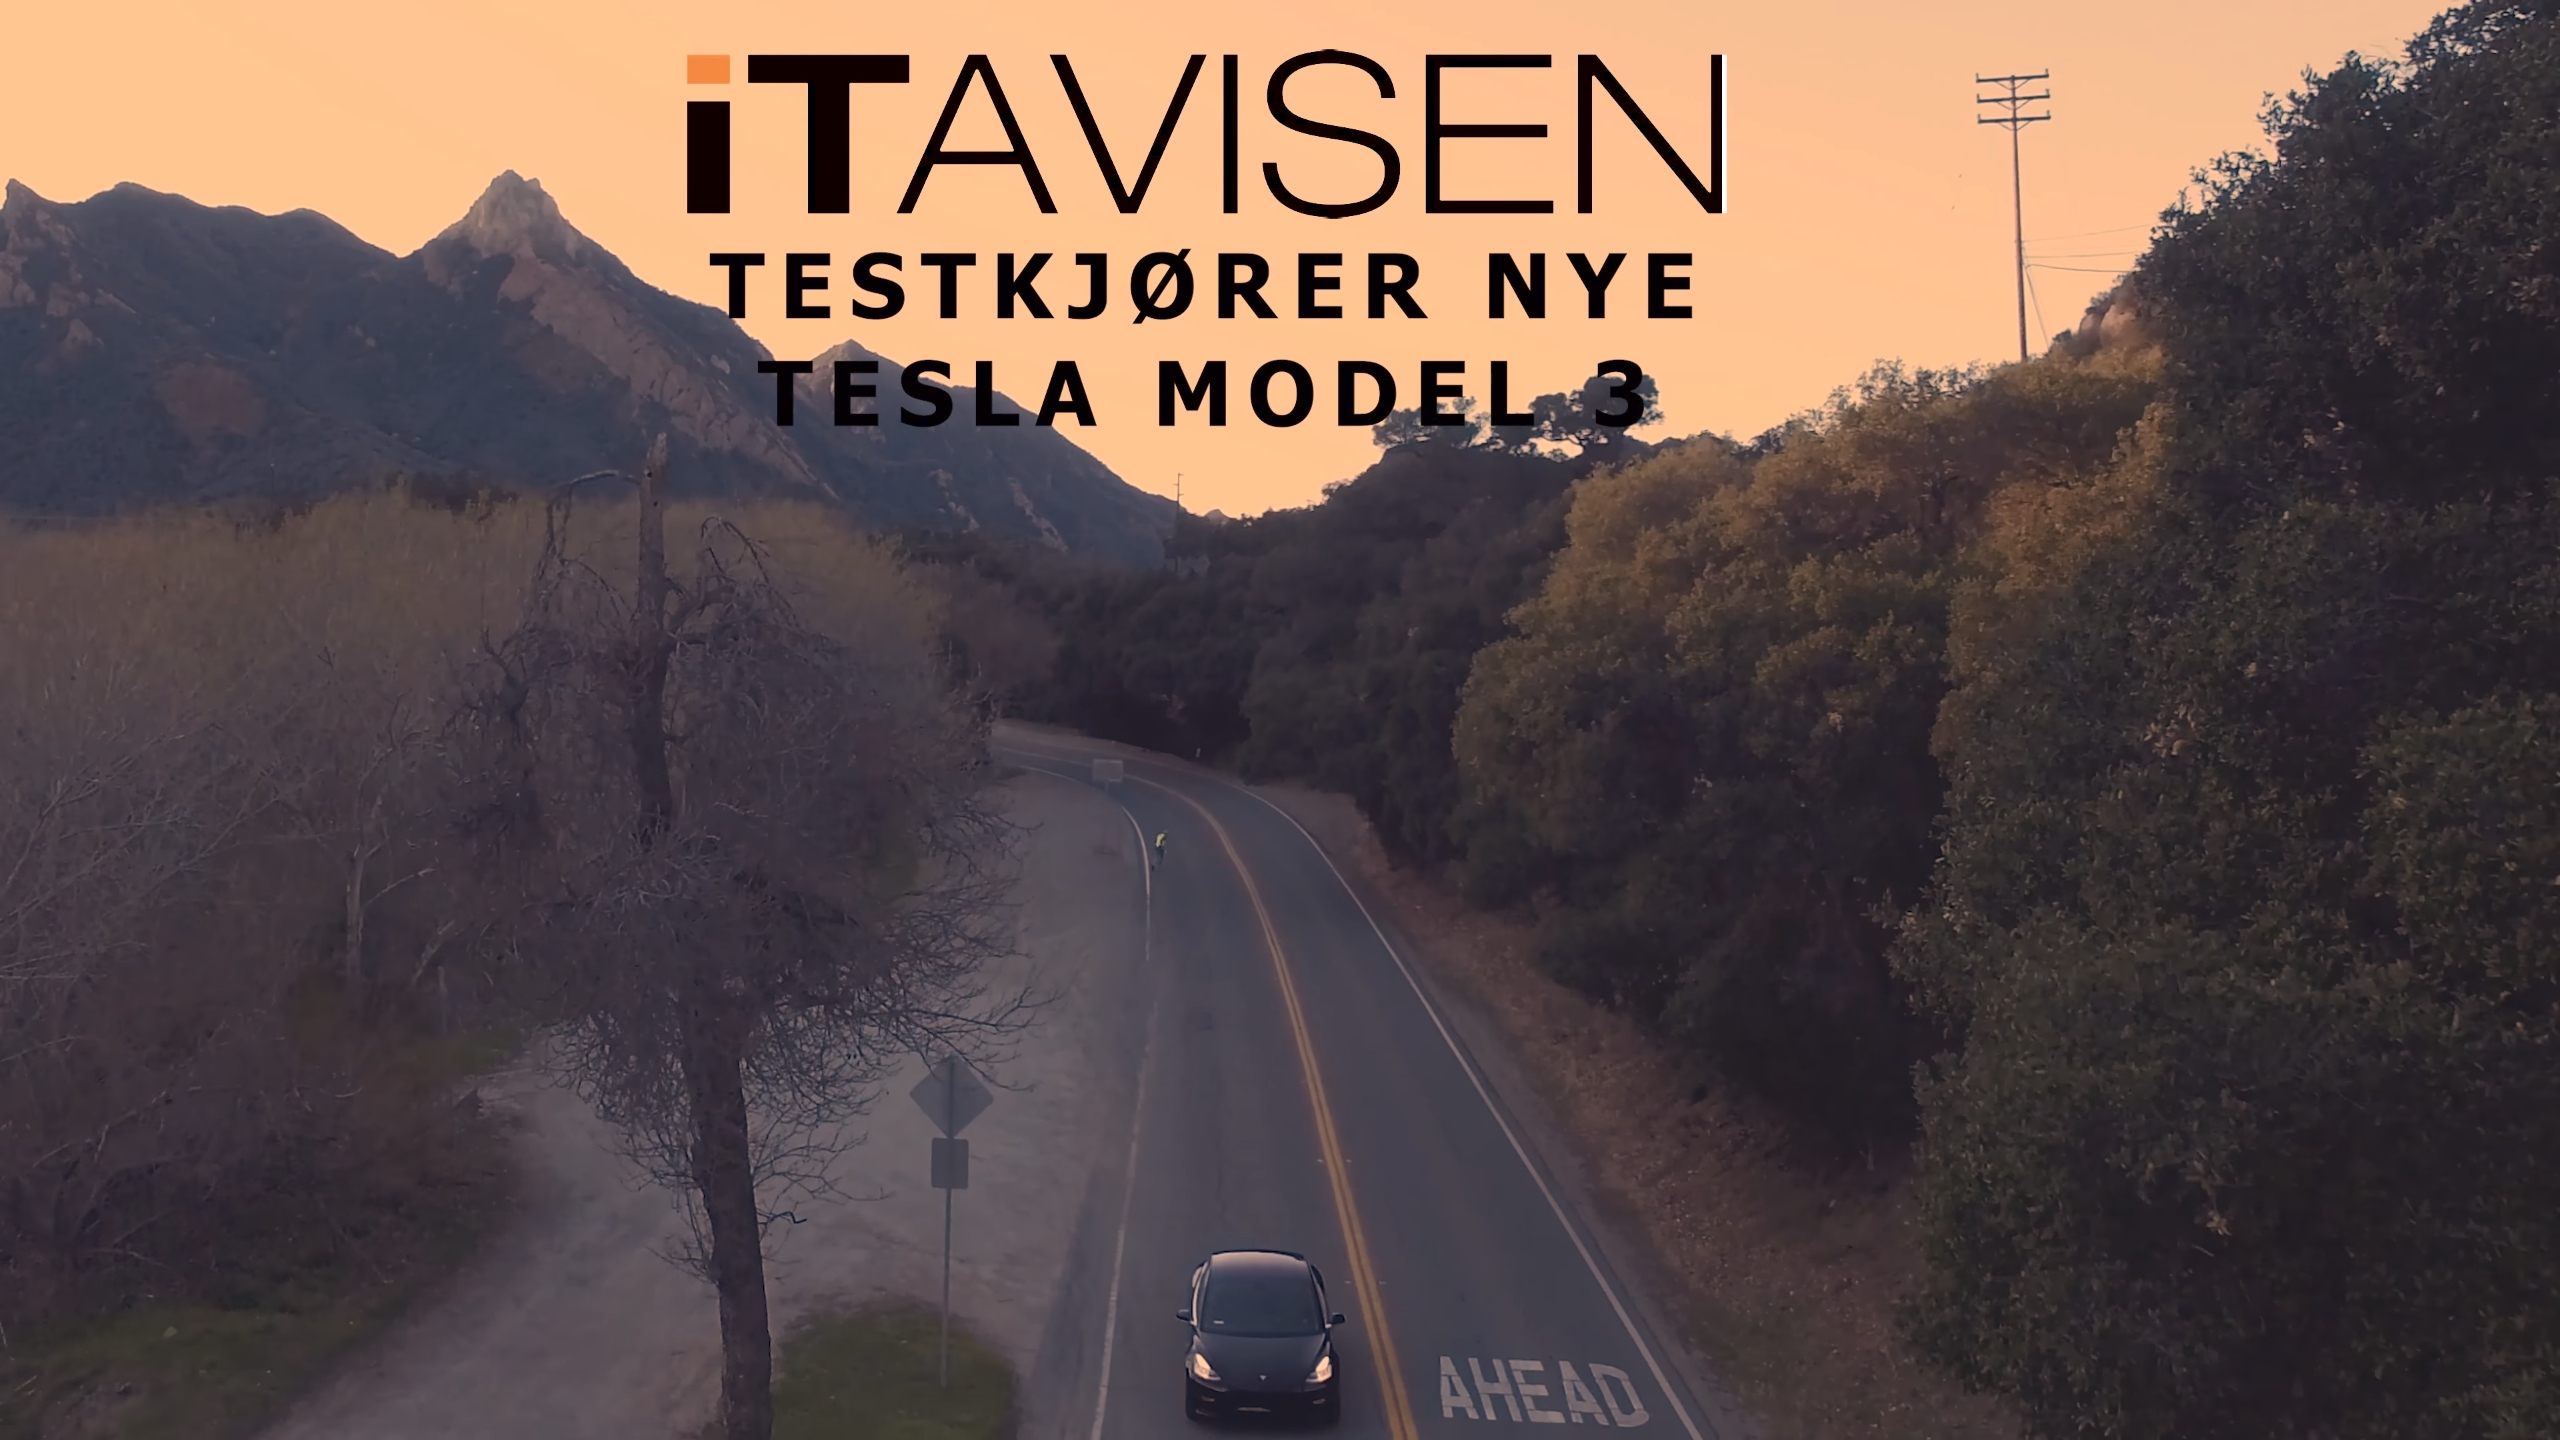 Tesla Model 3 er en bil som gjør føreren sikker, og som samtidig er veldig morsom grunnet en utrolig akselerasjon. Nå er det opp til Tesla å øke produksjonstakten og presse prisen ned til lovede 35 000 dollar for inngangsmodellen.